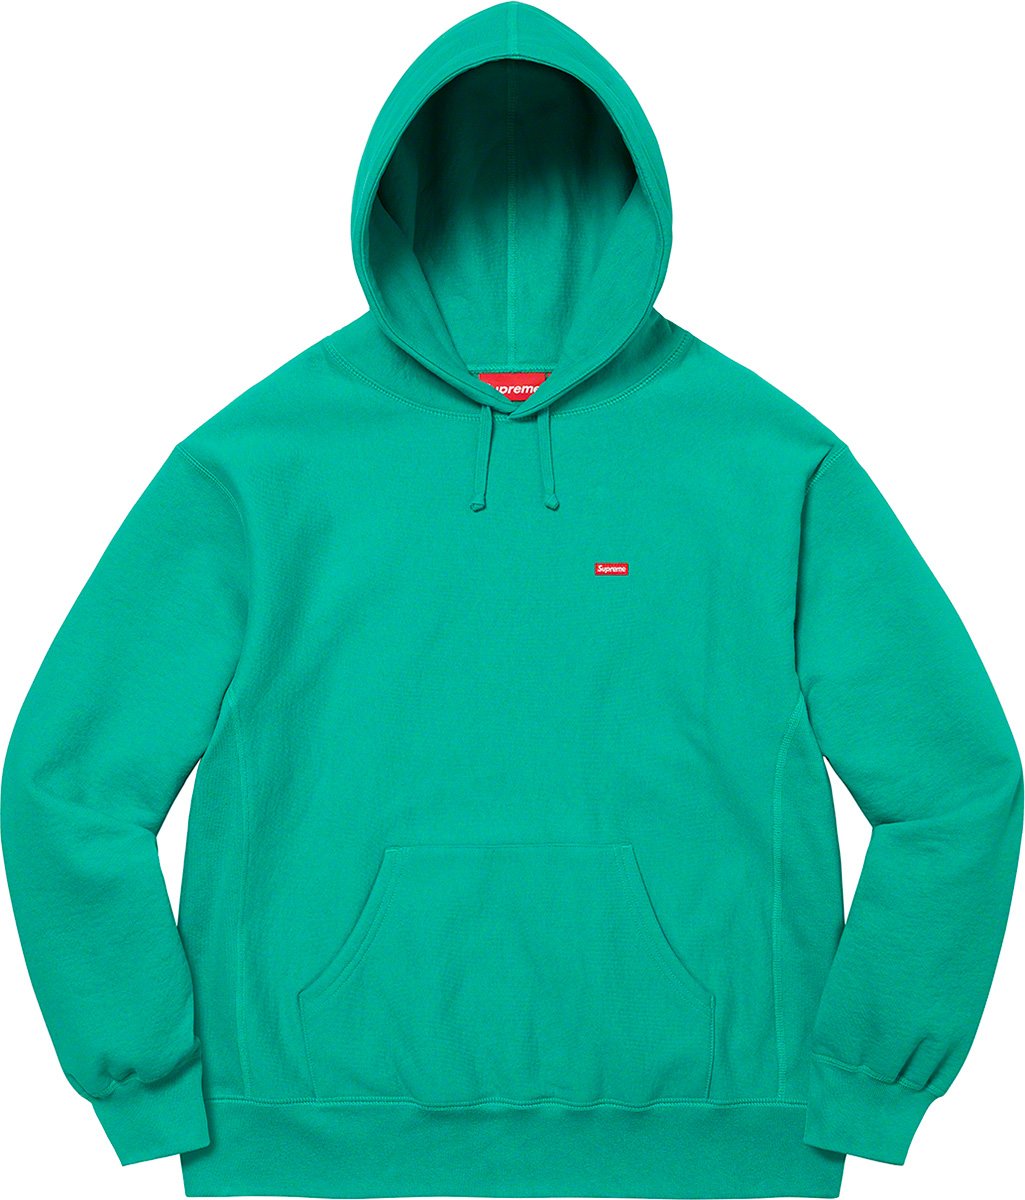 カラーグレーSupreme Small Box Hooded Sweatshirt 22aw